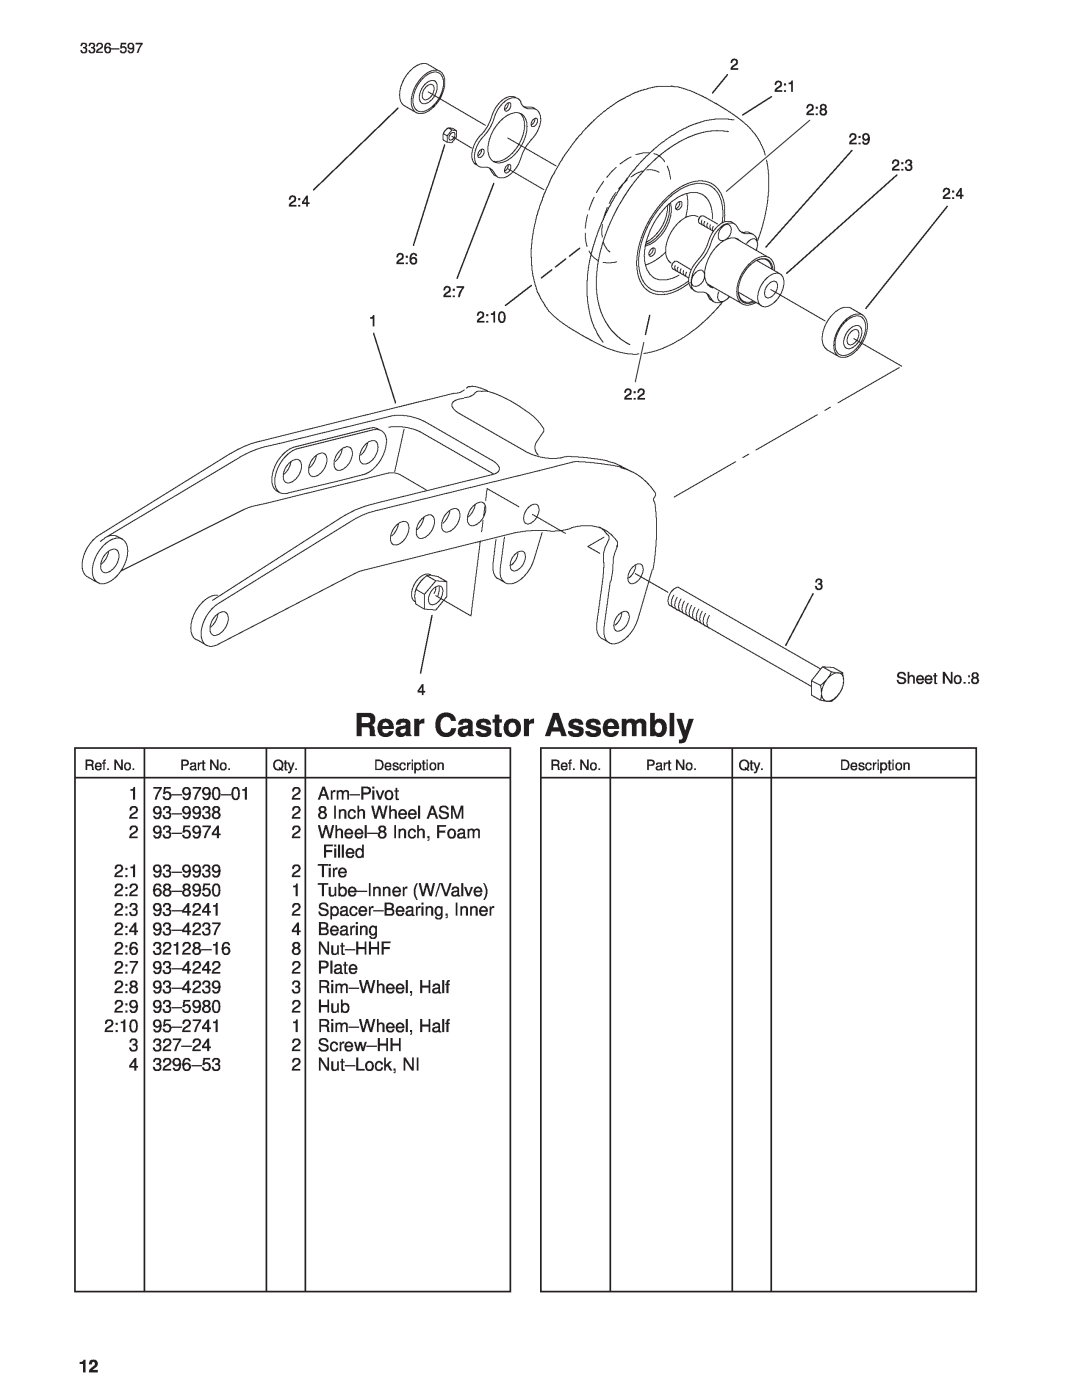 Toro 30402210000001 and Up manual Rear Castor Assembly, Sheet No.8 